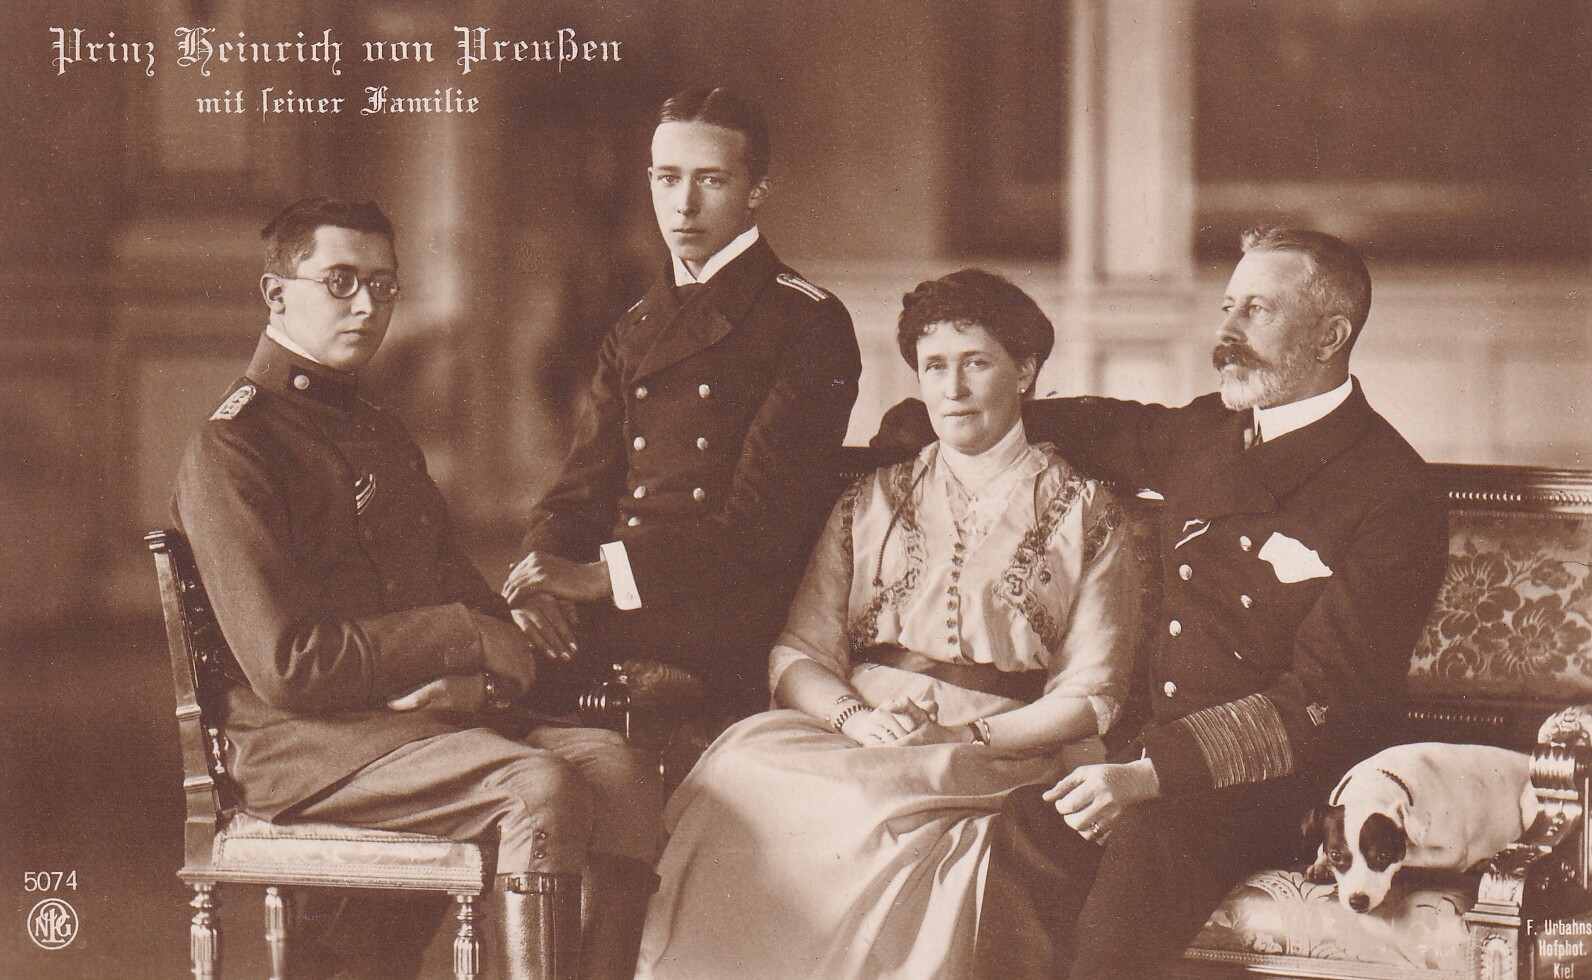 Bildpostkarte mit Foto des Prinzen Heinrich von Preußen (1862-1929) mit Ehefrau und zwei Söhnen, um 1914/15 (Schloß Wernigerode GmbH RR-F)